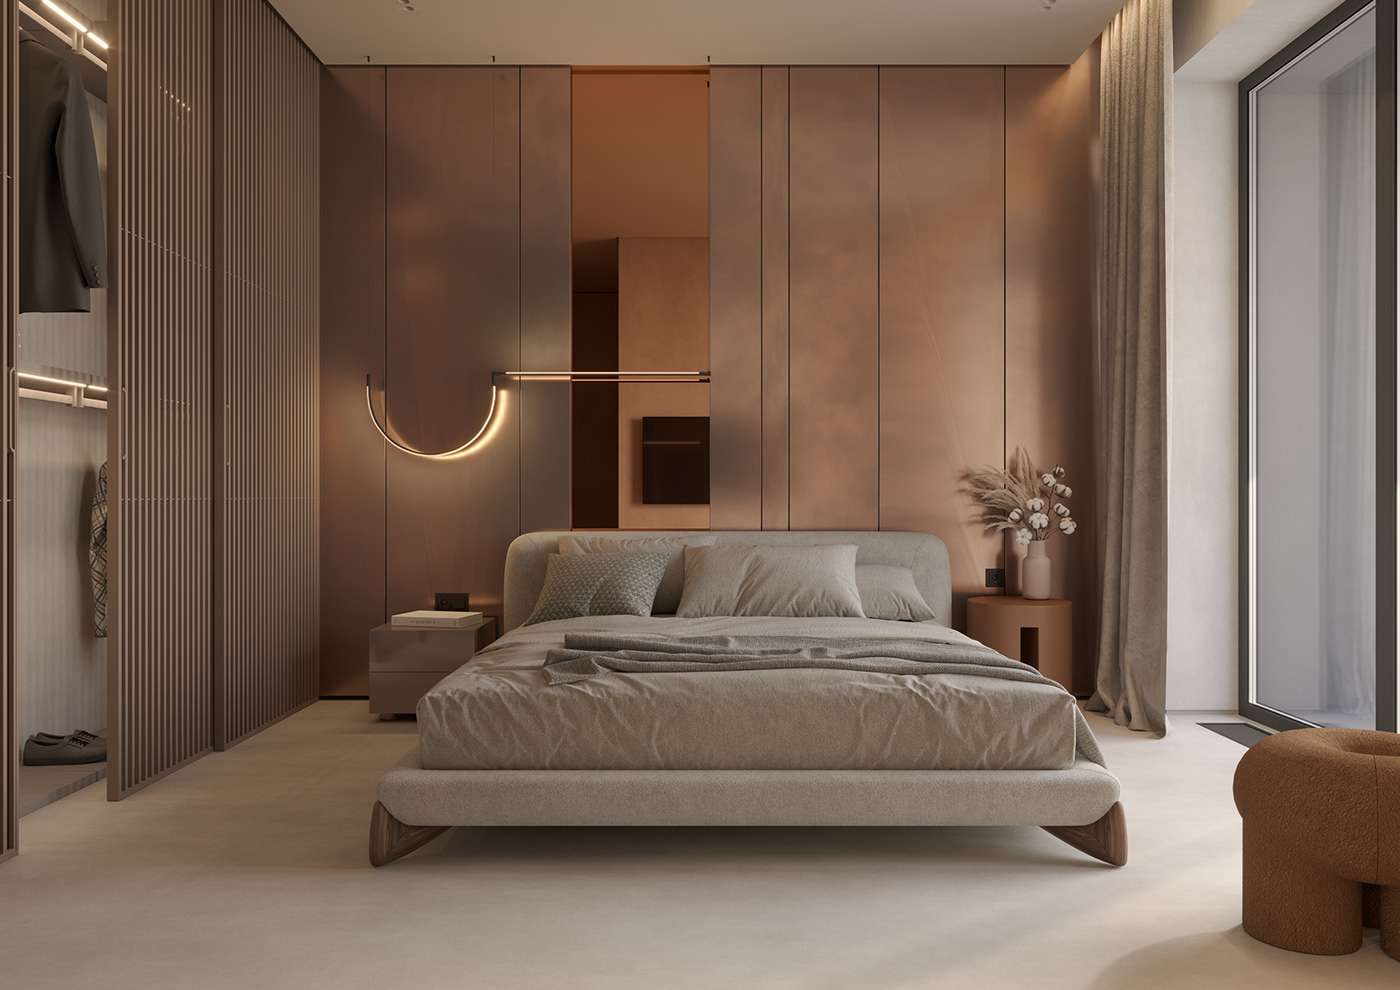  Sự chia tách rõ ràng giữa không gian sống và không gian ngủ tạo ra sự riêng biệt và tiện ích cho cả hai phòng